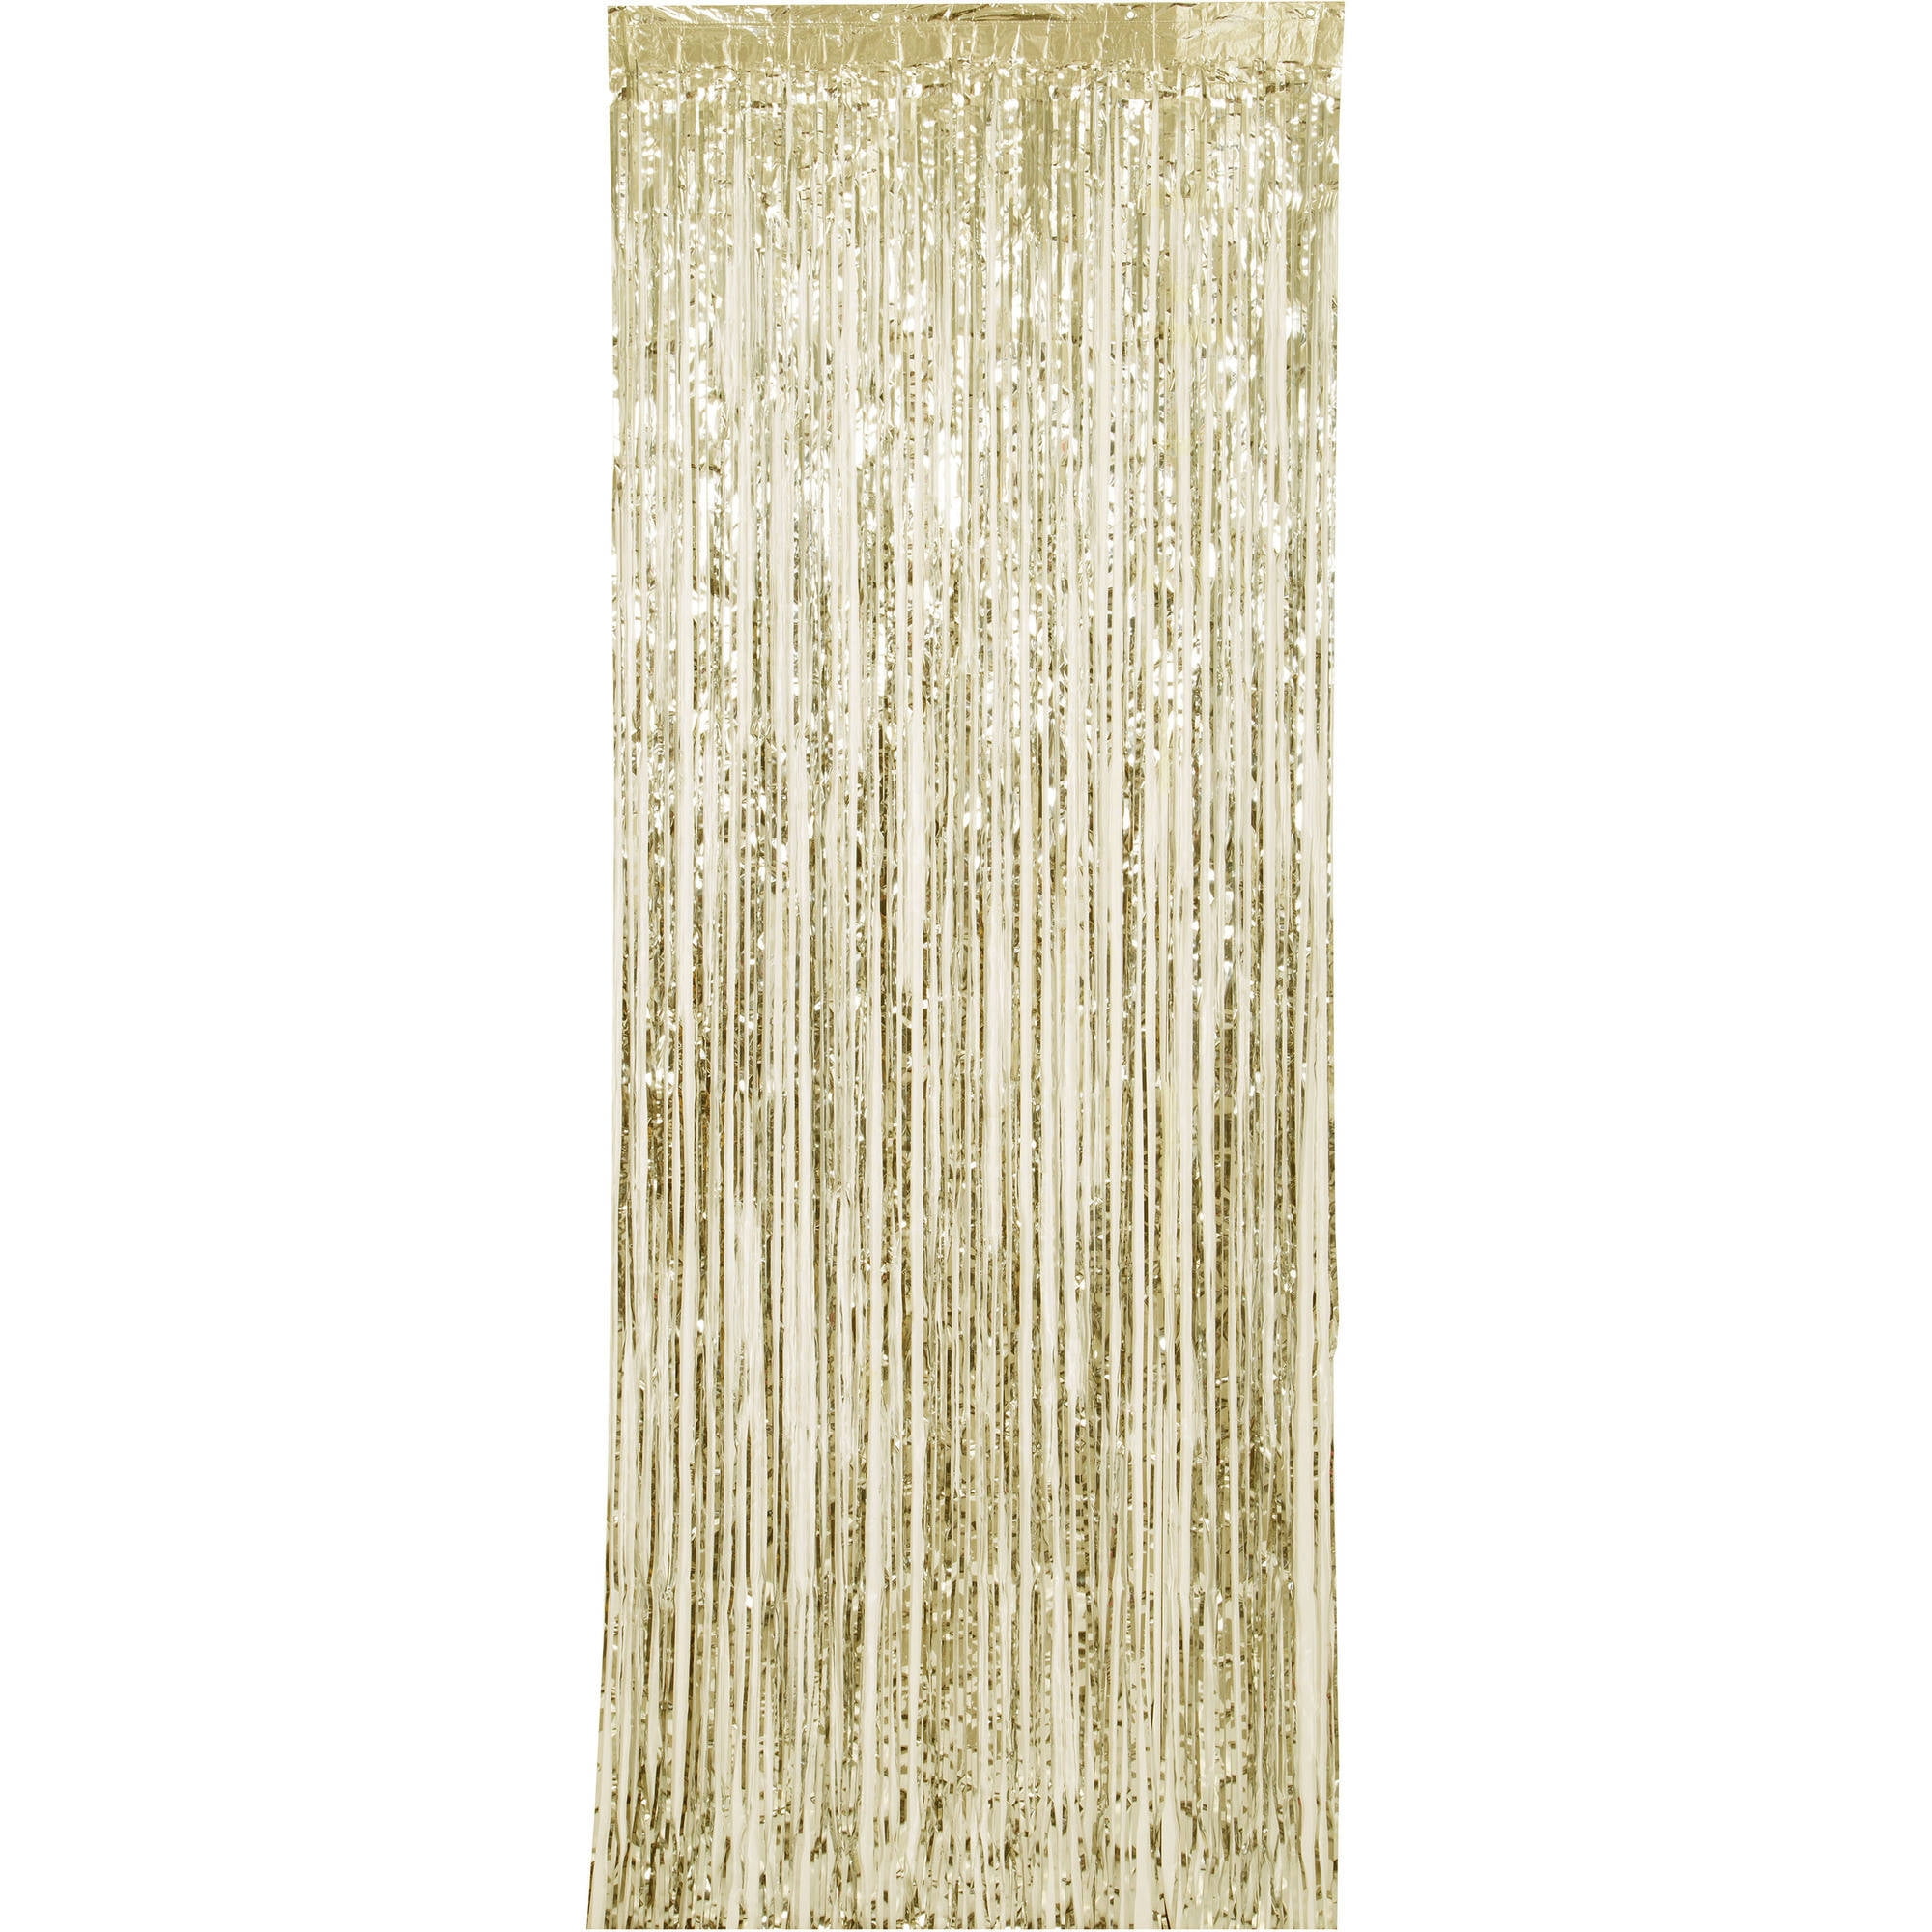 1pcs Foil Fringe Shimmer Curtain Door Wedding Party Silver gold Decor V2K8 